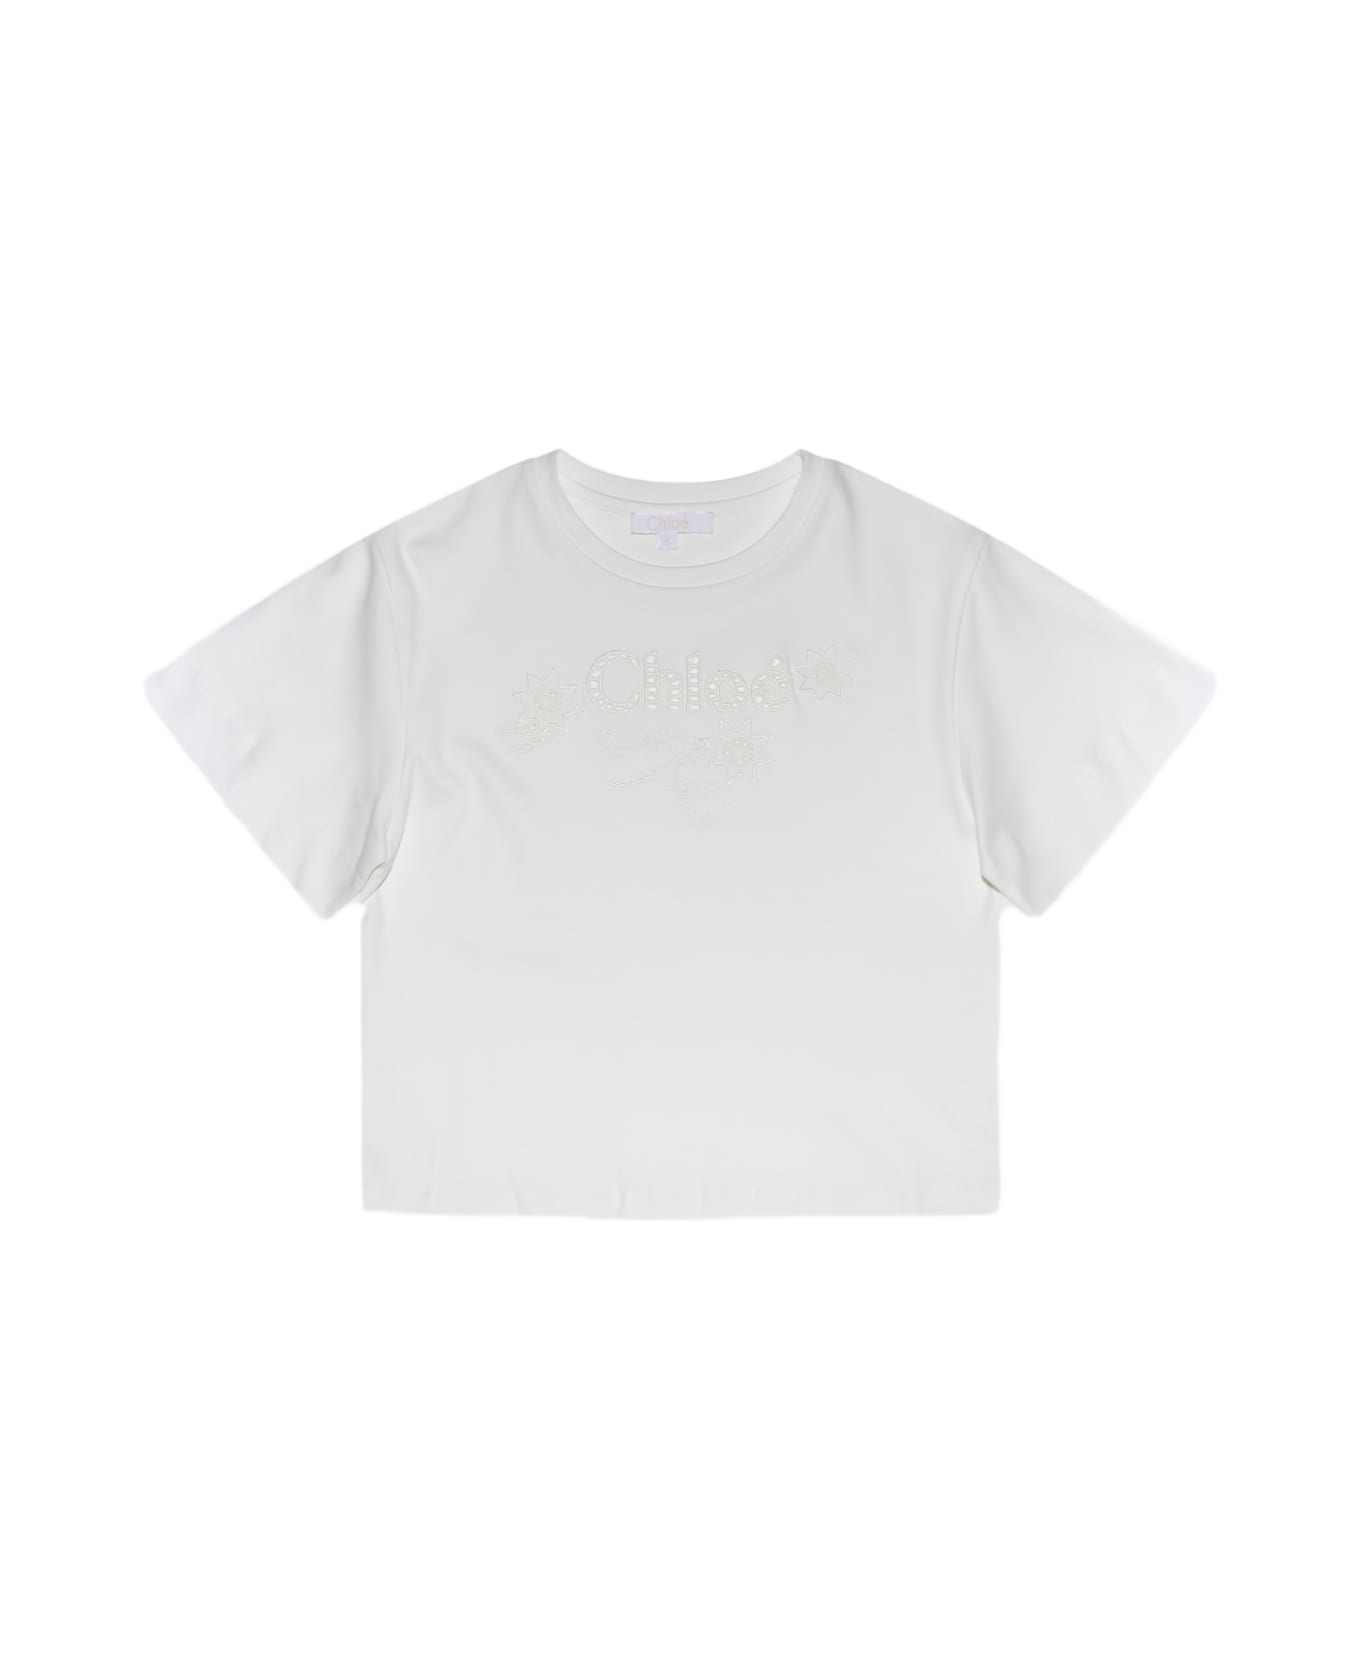 Chloé White Cotton T-shirt - Beige